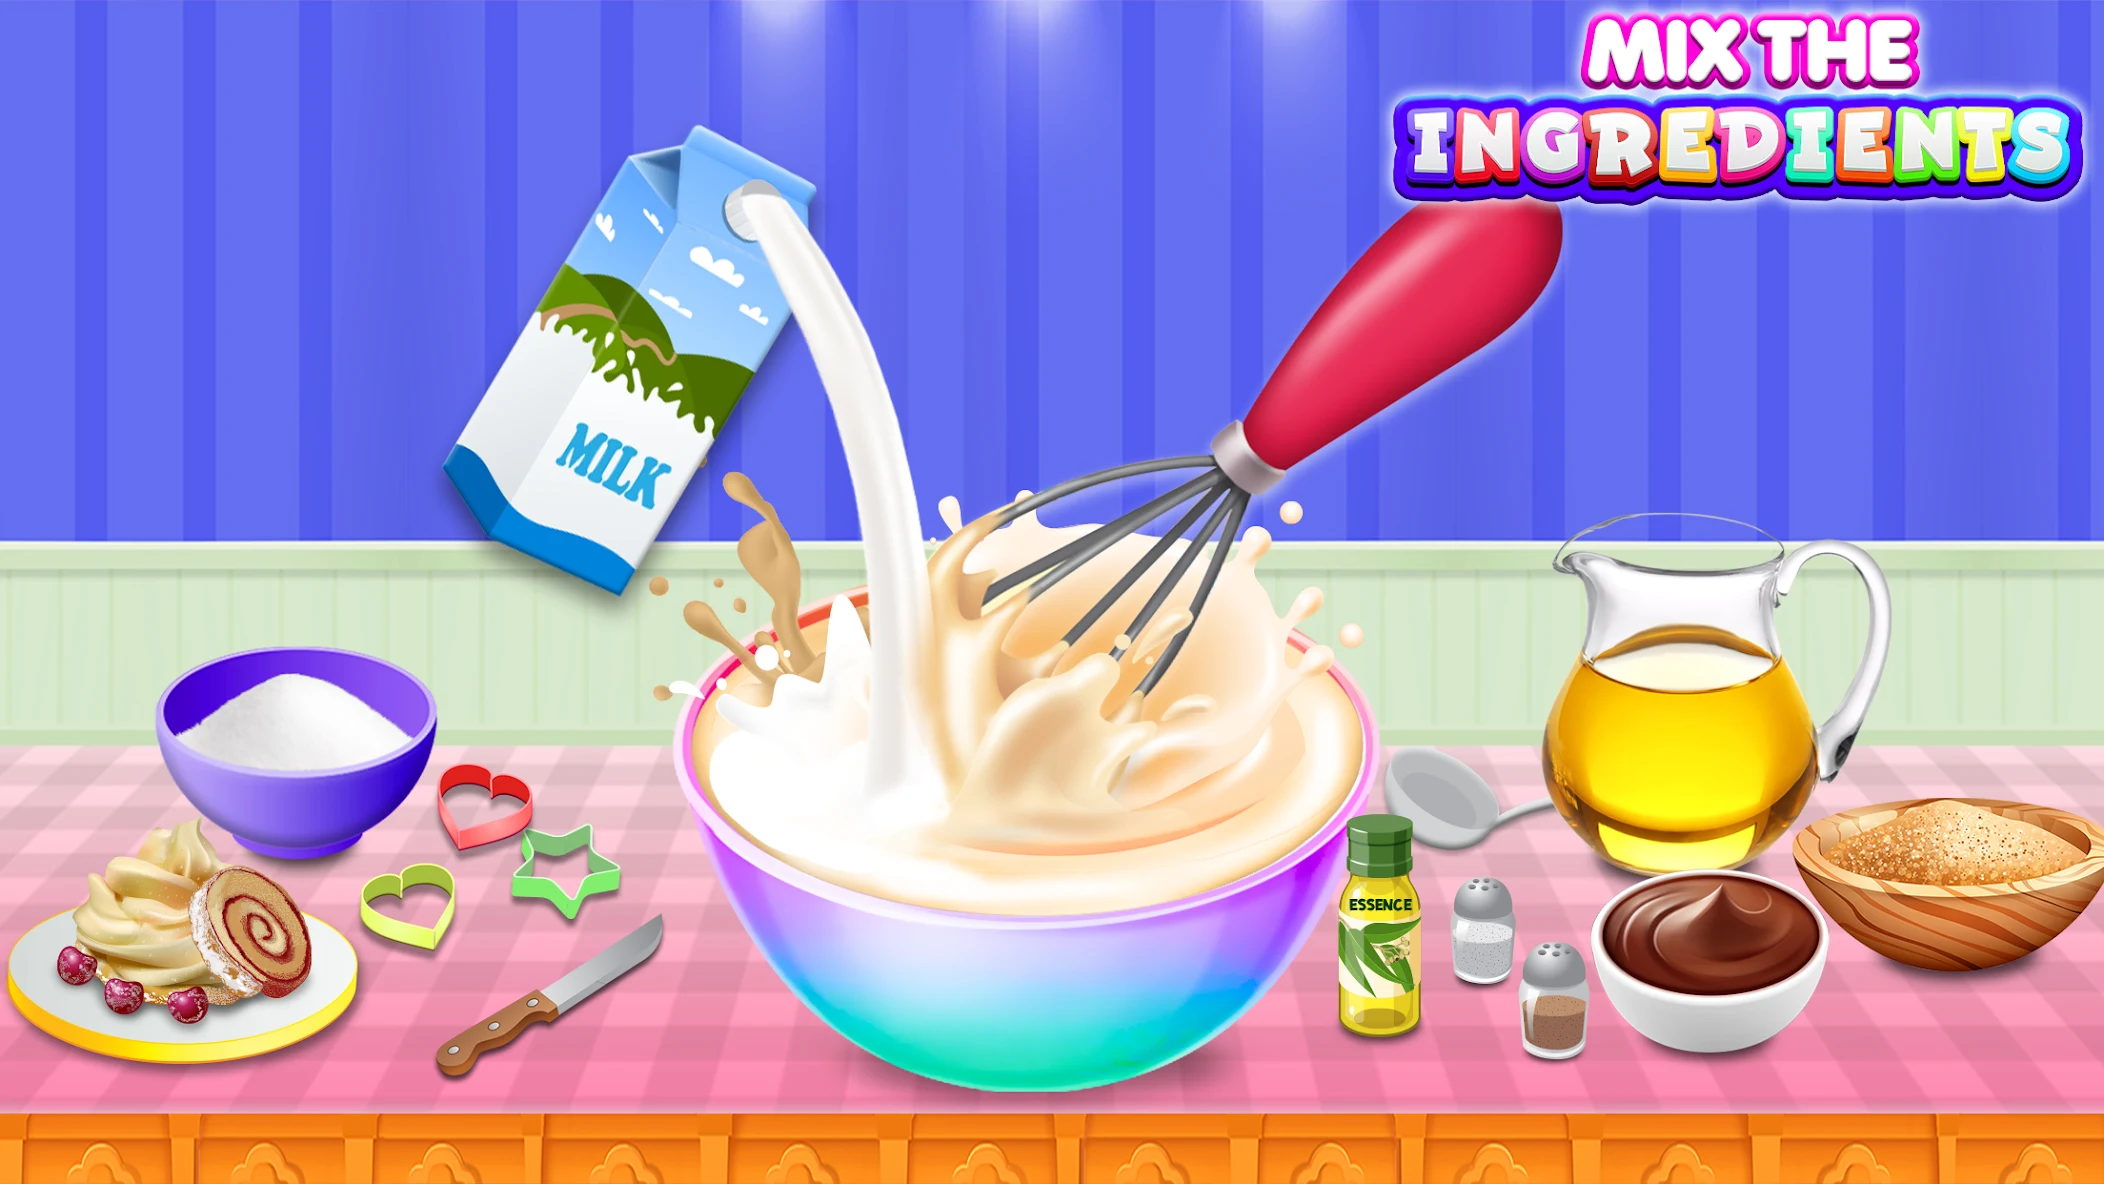 Real Cake Maker 3D - Bake, Design & Decorate – Cake Making | Fun Kids Game  | HayDay - YouTube